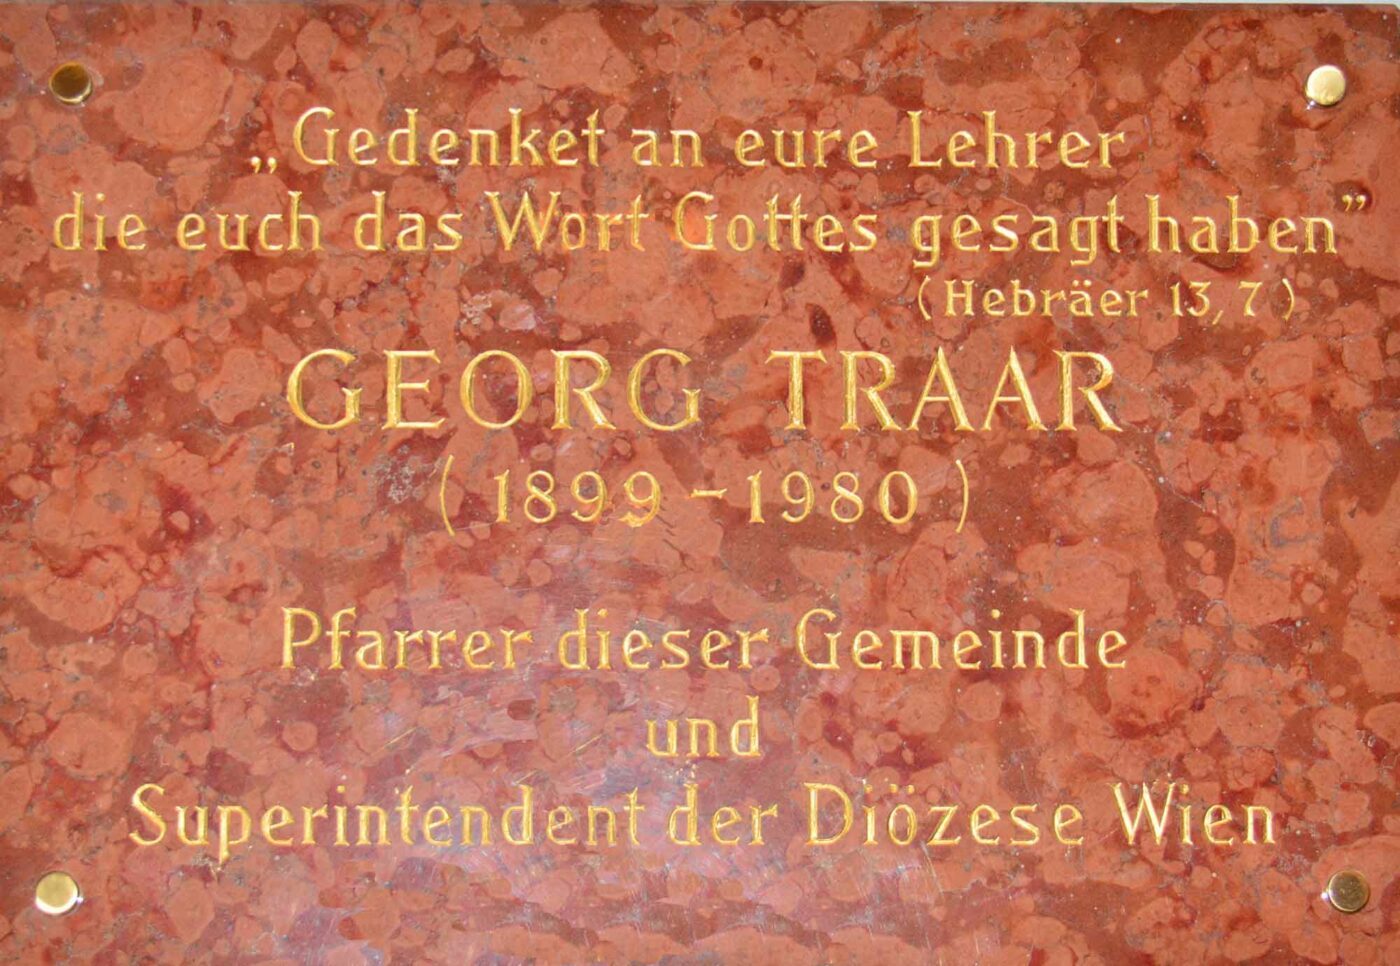 Eine Gedenktafel in der Lutherischen Stadtkirche in Wien erinnert an den Superintendenten von 1947 bis 1972. Foto: wikimedia/GuentherZ/cc by sa 3.0